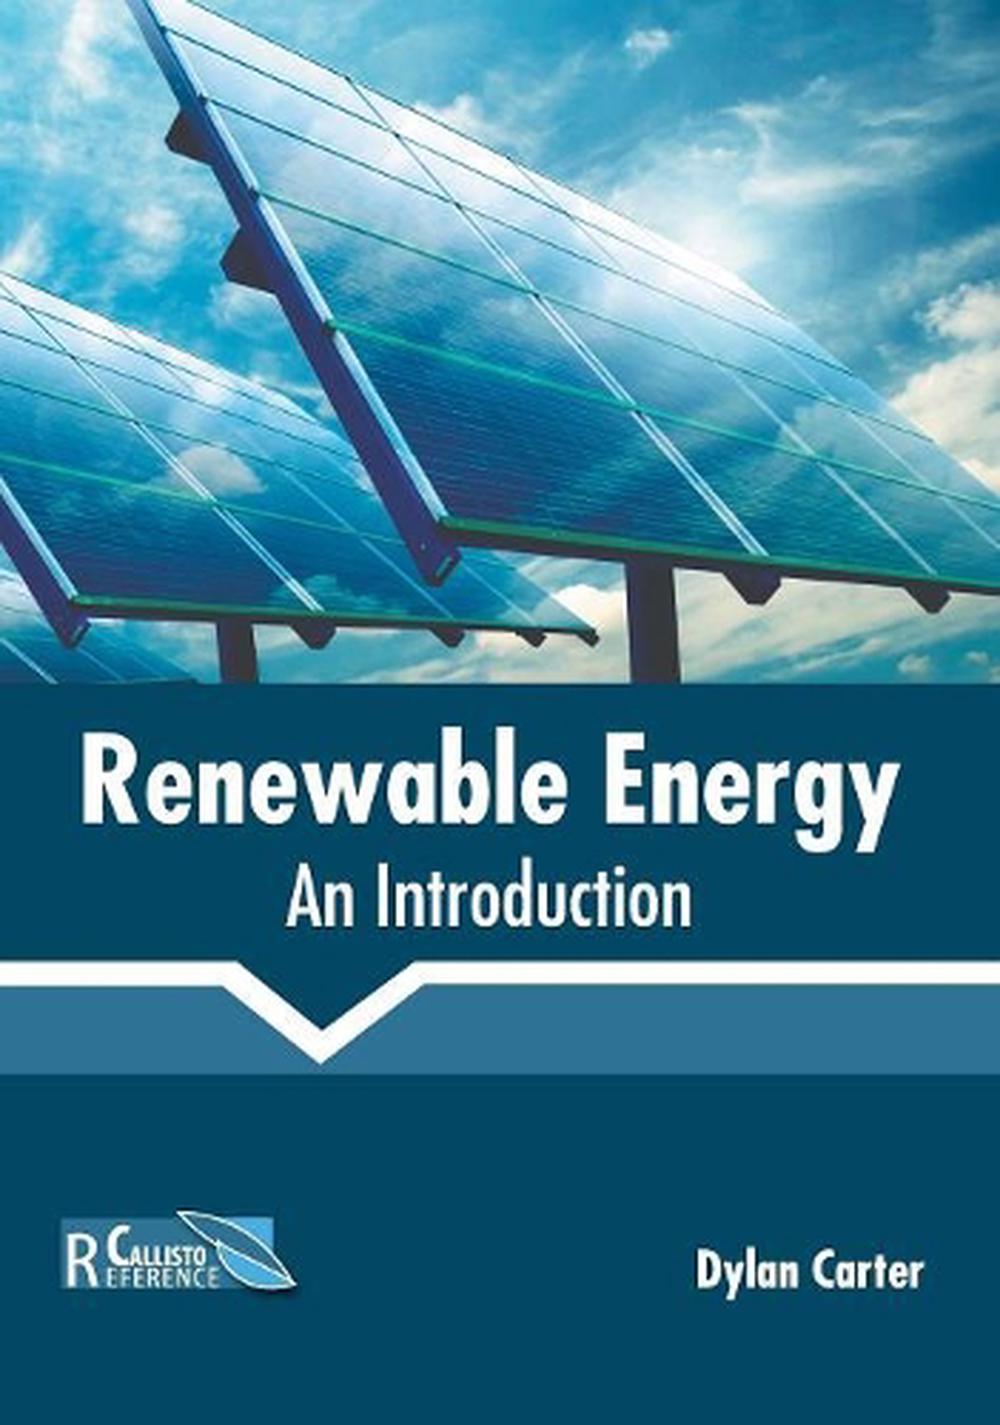 renewable energy topics essays